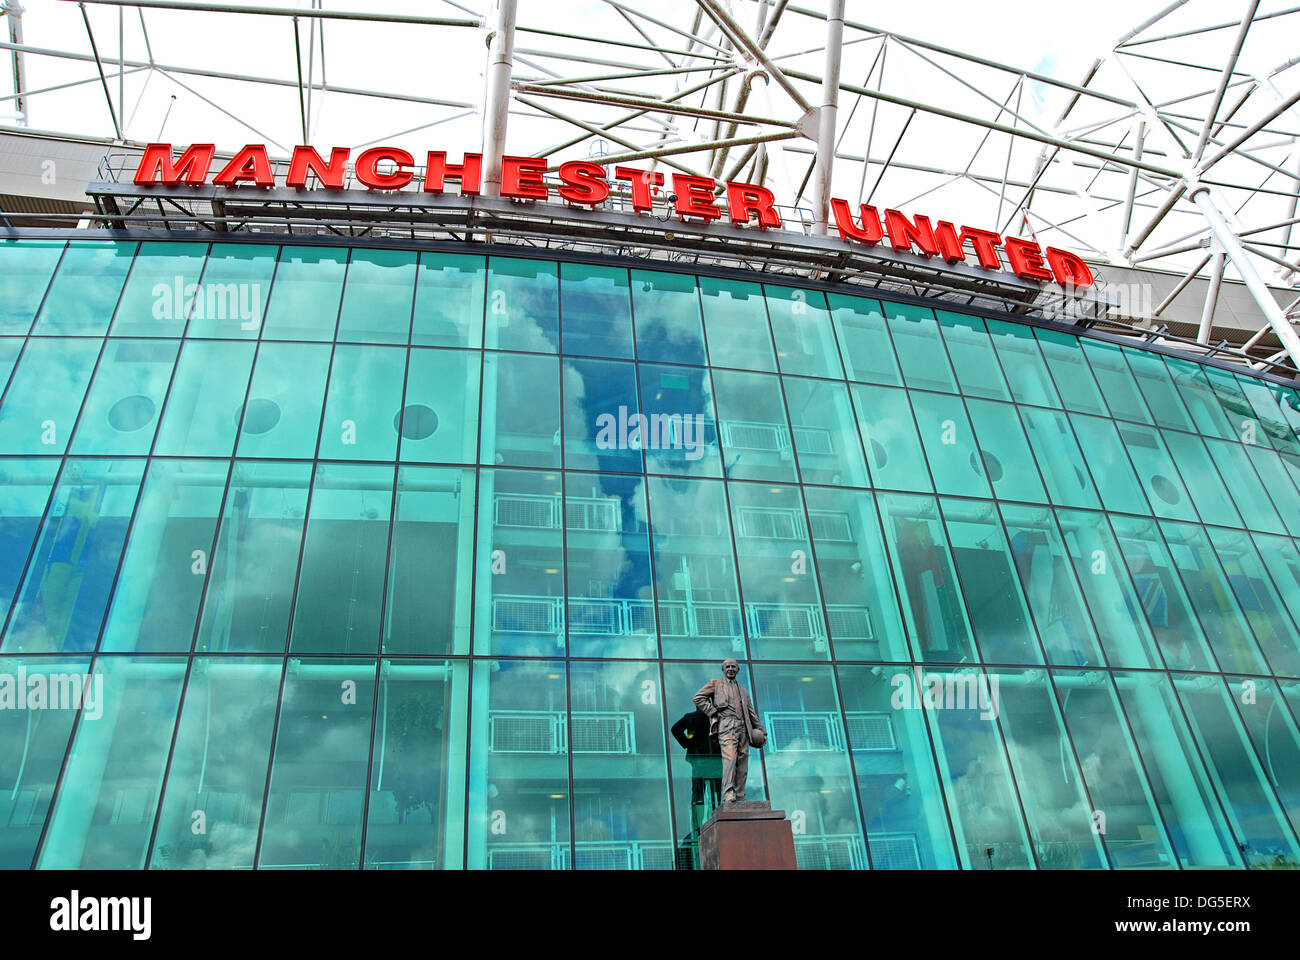 Le stade de football Old Trafford la maison de Manchester United FC Banque D'Images